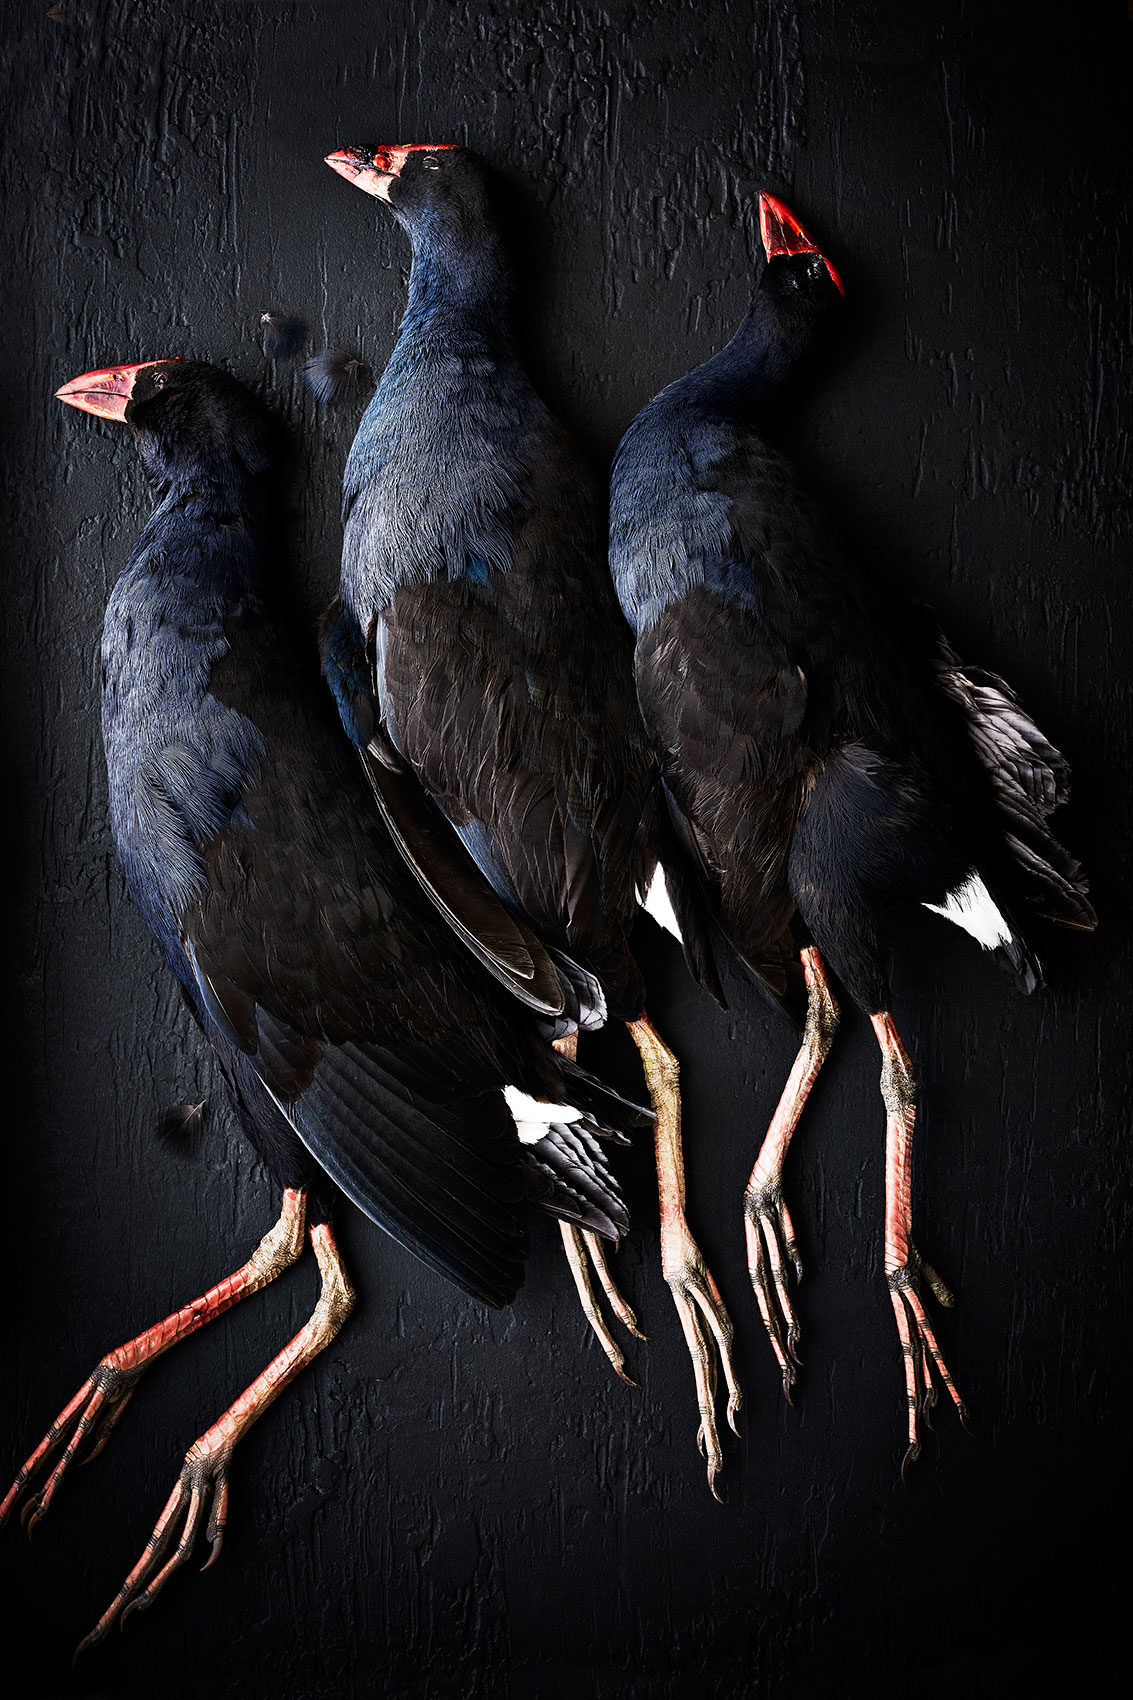 Hiakai • New Zealand Native Pukeko Birds • Lifestyle & Hospitality Food Photography